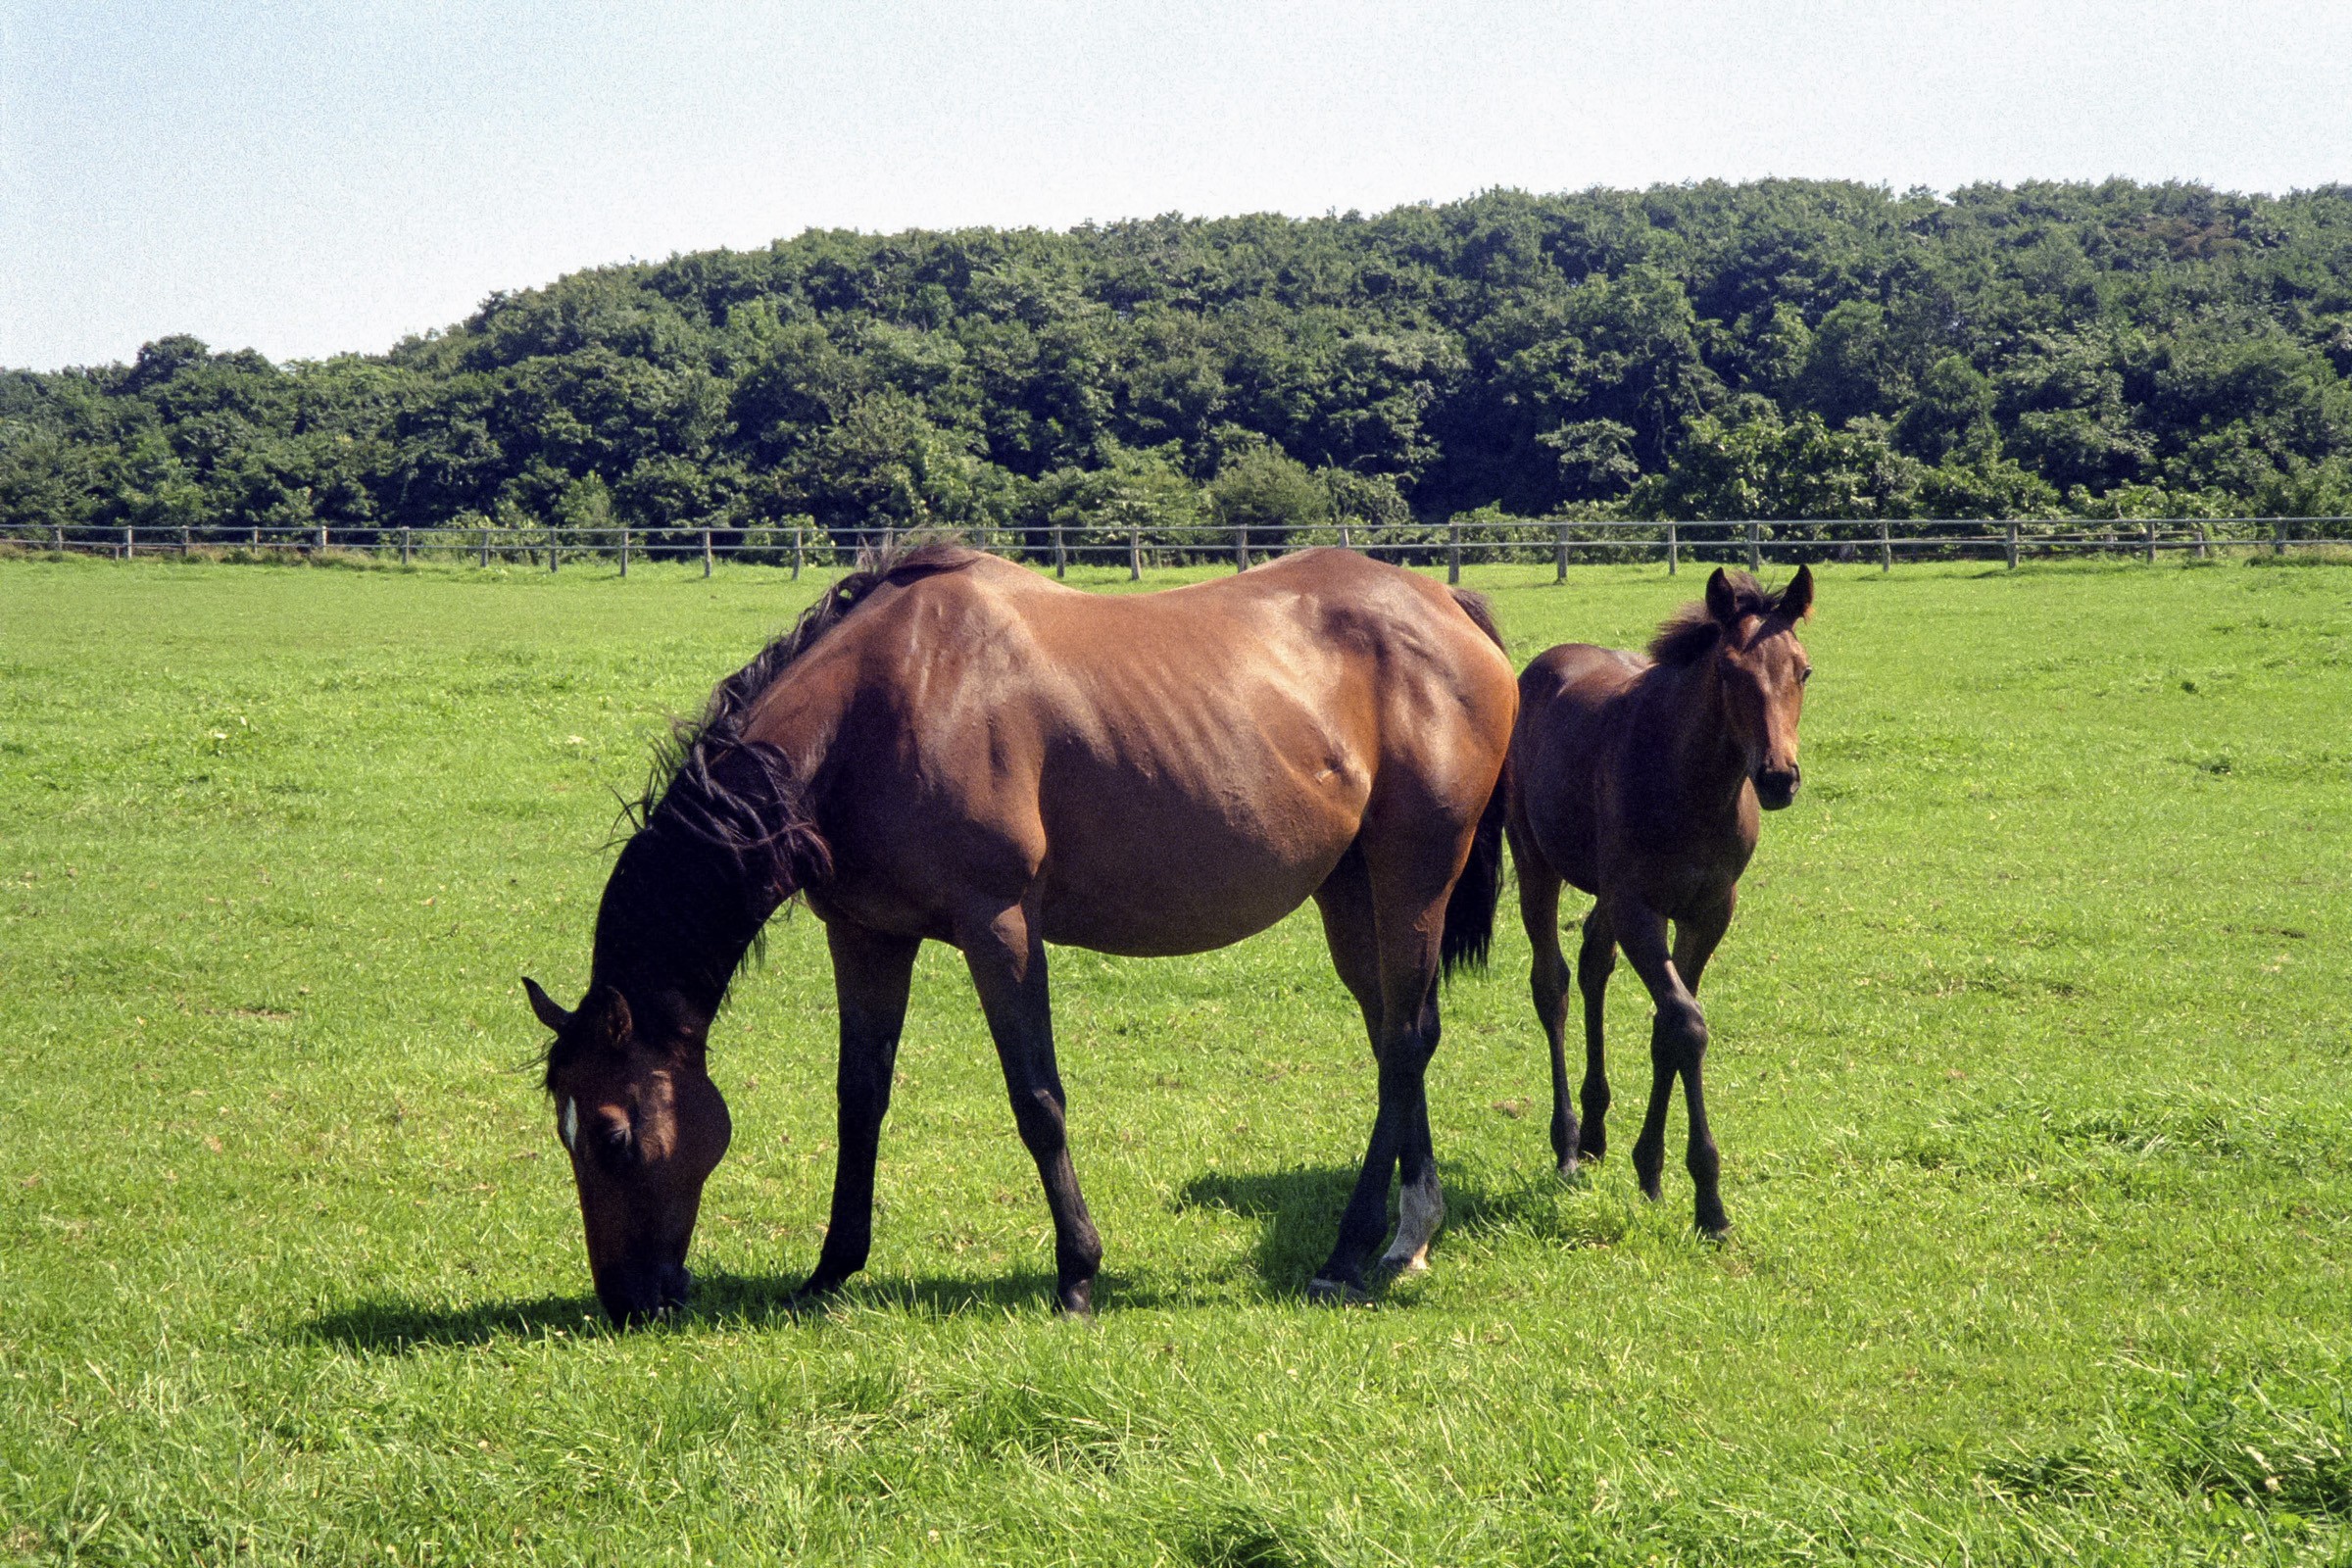 馬の親子 のフリー写真素材のフリー写真素材 イメージガレージ